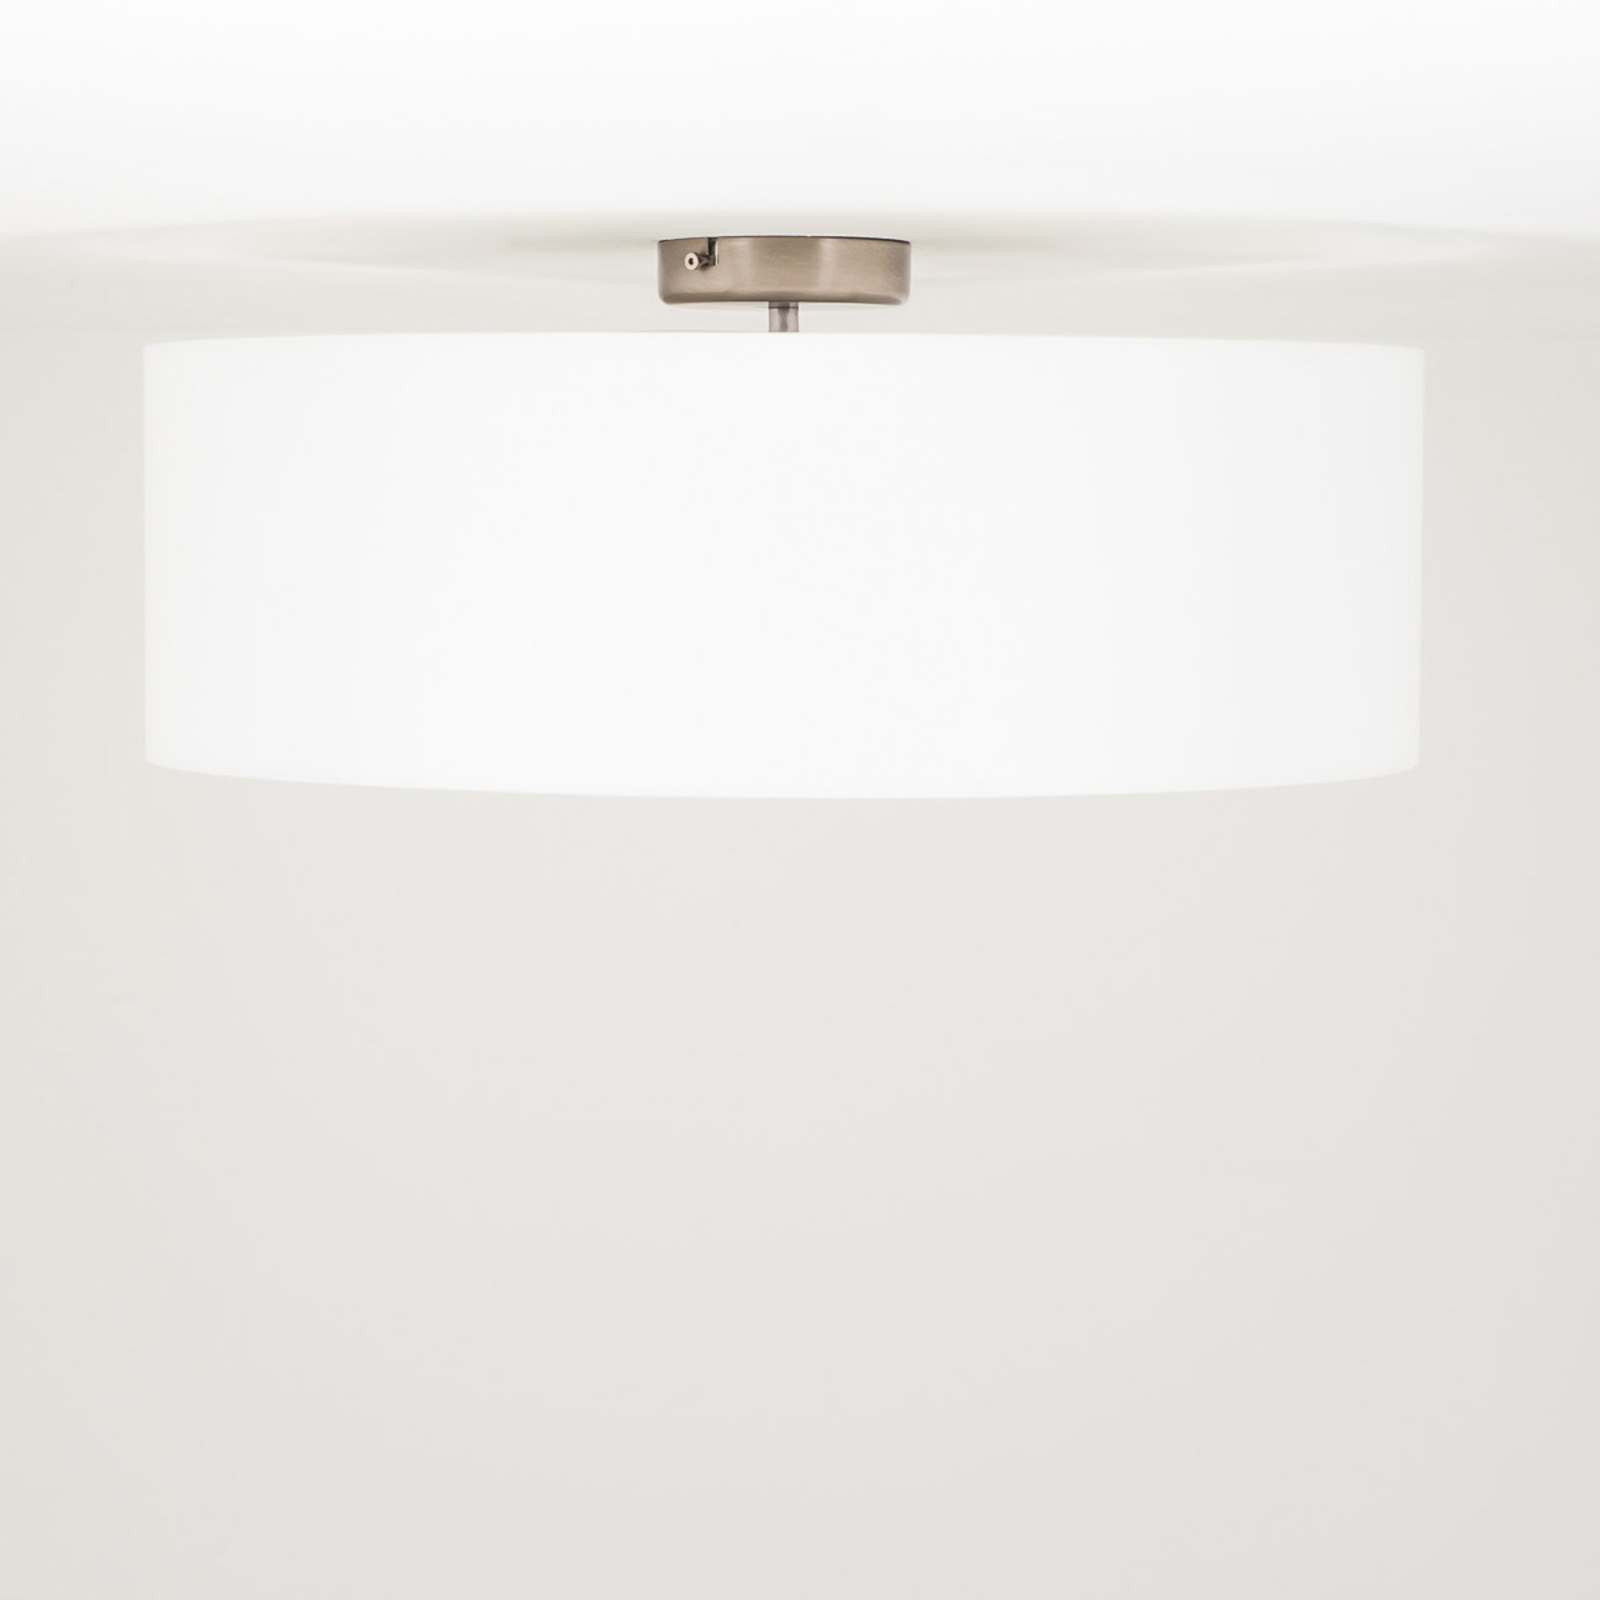 Quitani Gala ceiling light, Ø 50 cm, chintz, white, Ø 50 cm